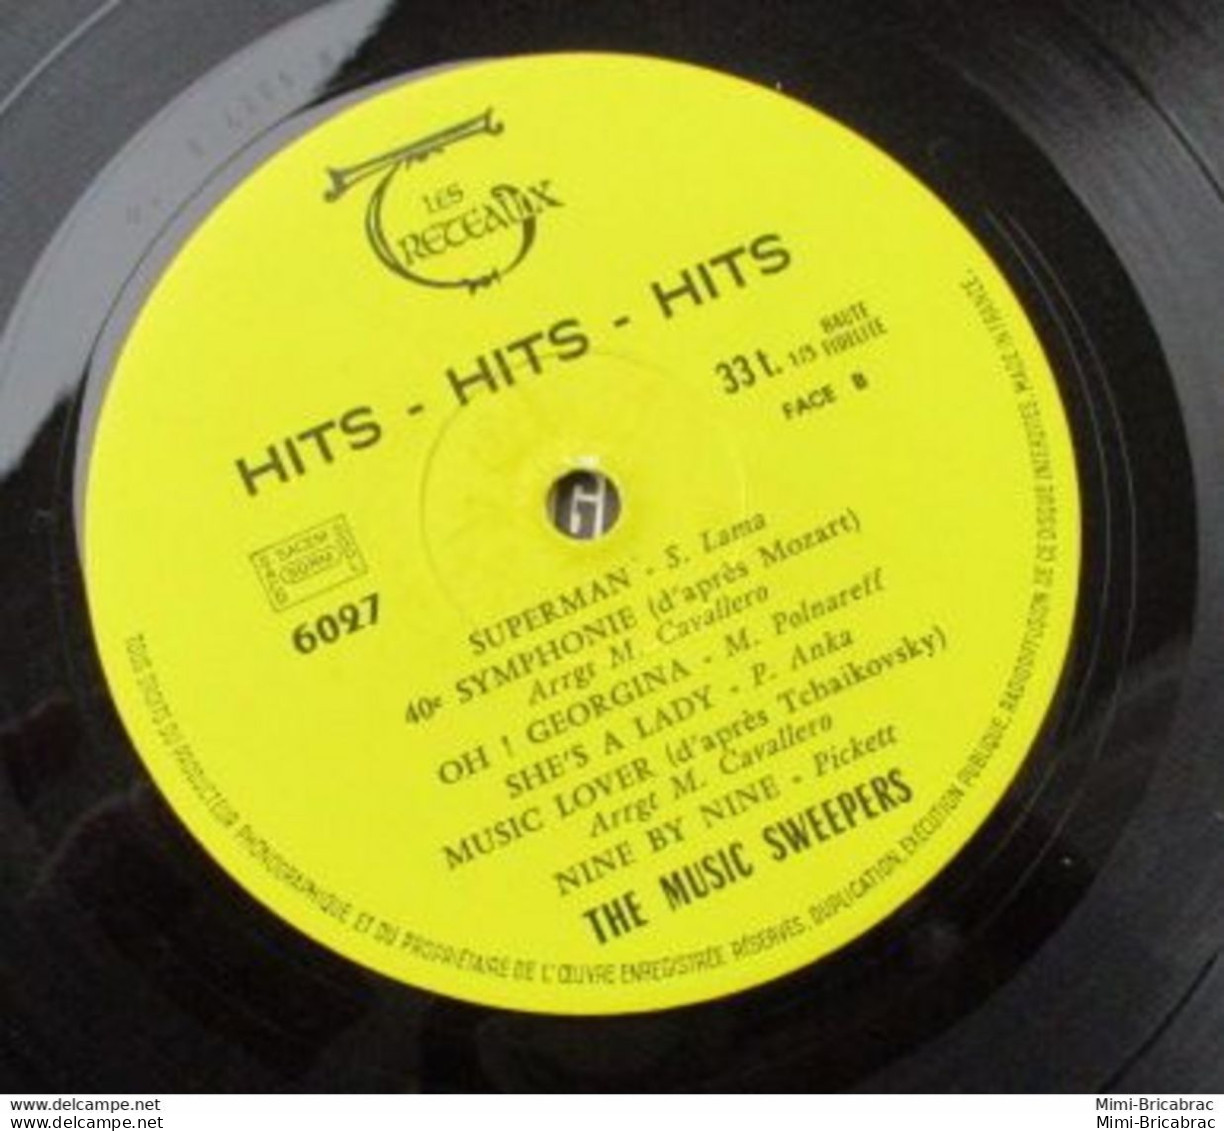 Suite Décés : Coté 7 Euros !! 33T HITS HITS HITS Vinyle LP 12" THE MUSIC SWEEPERS - SAD LIZA Pin'up TRETEAUX - Compilaties